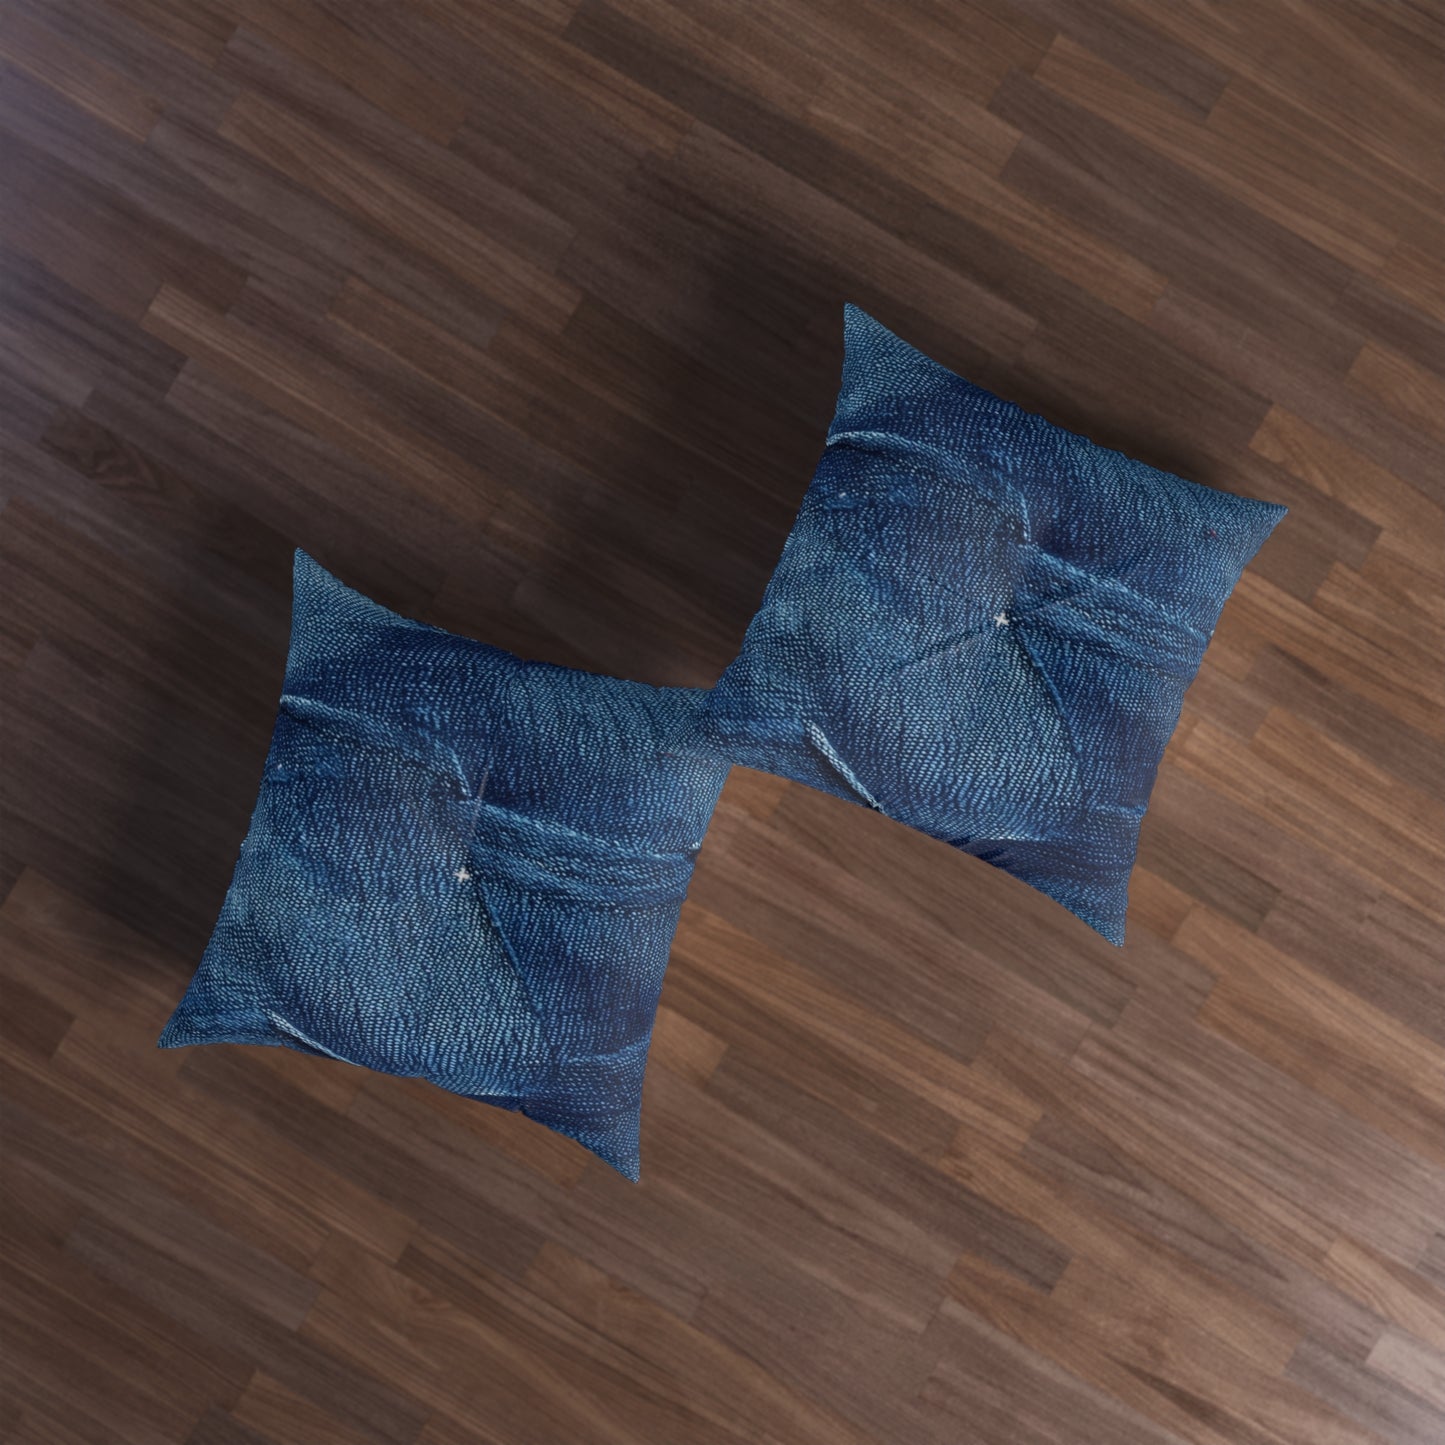 Dark Blue: Distressed Denim-Inspired Fabric Design - Tufted Floor Pillow, Square